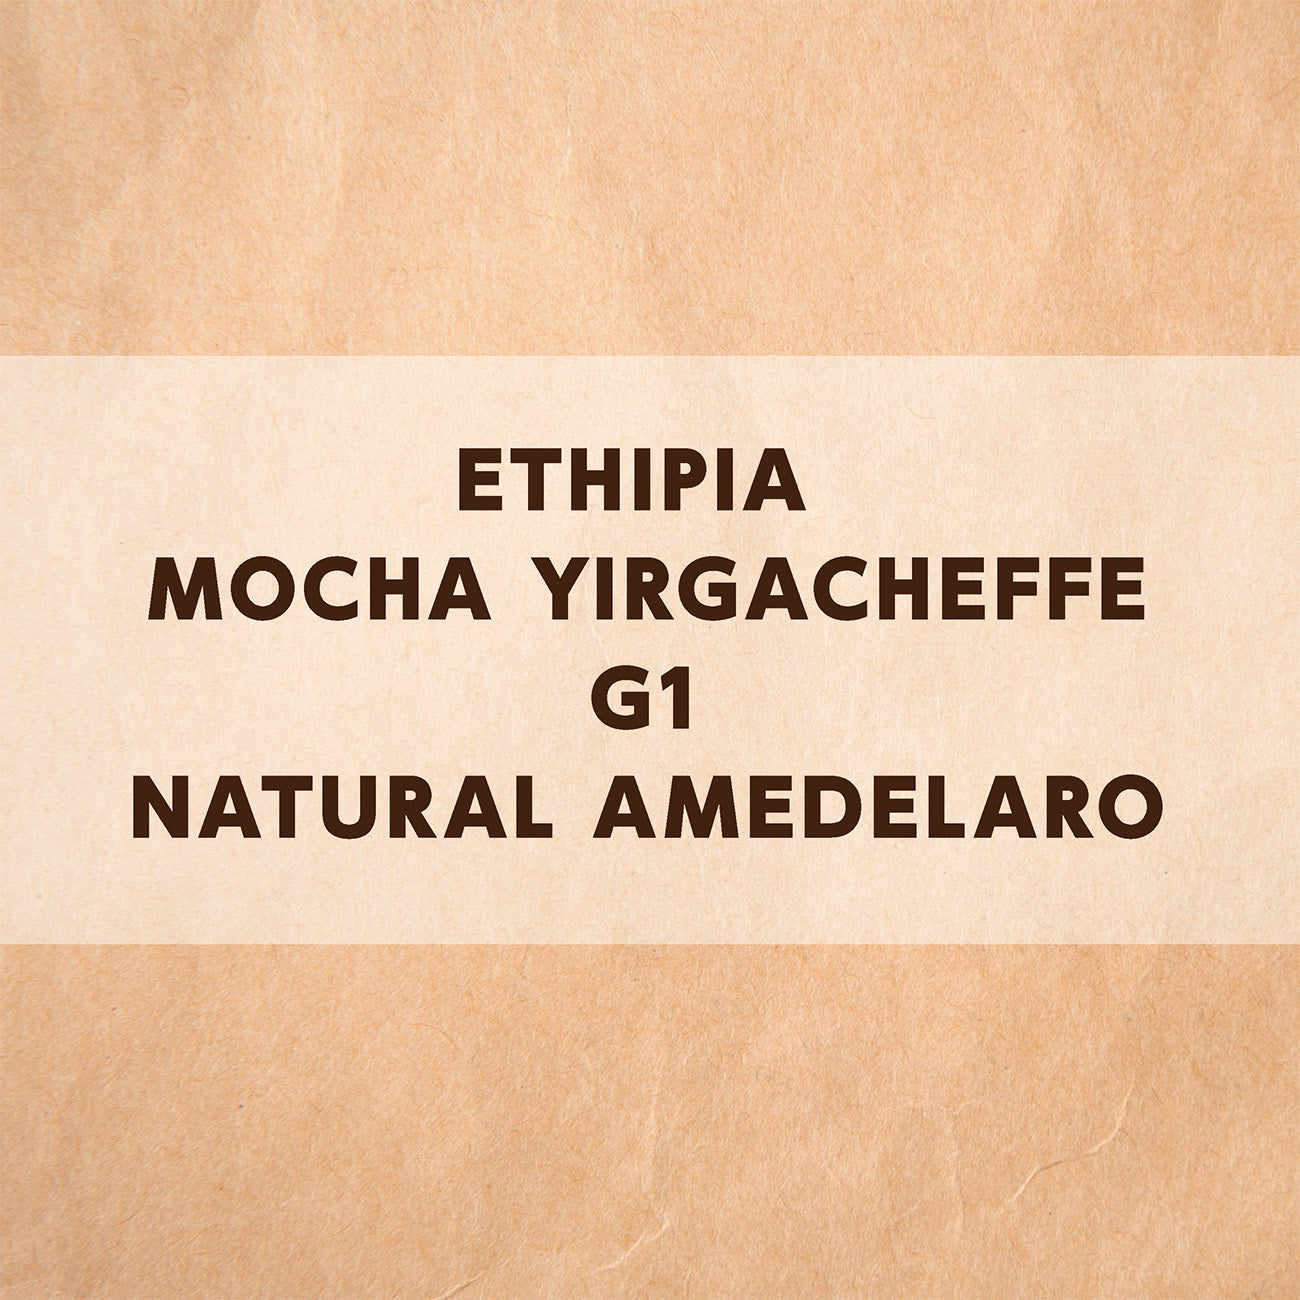 エチオピア モカ イルガチェフェG1ナチュラル アメデラロ